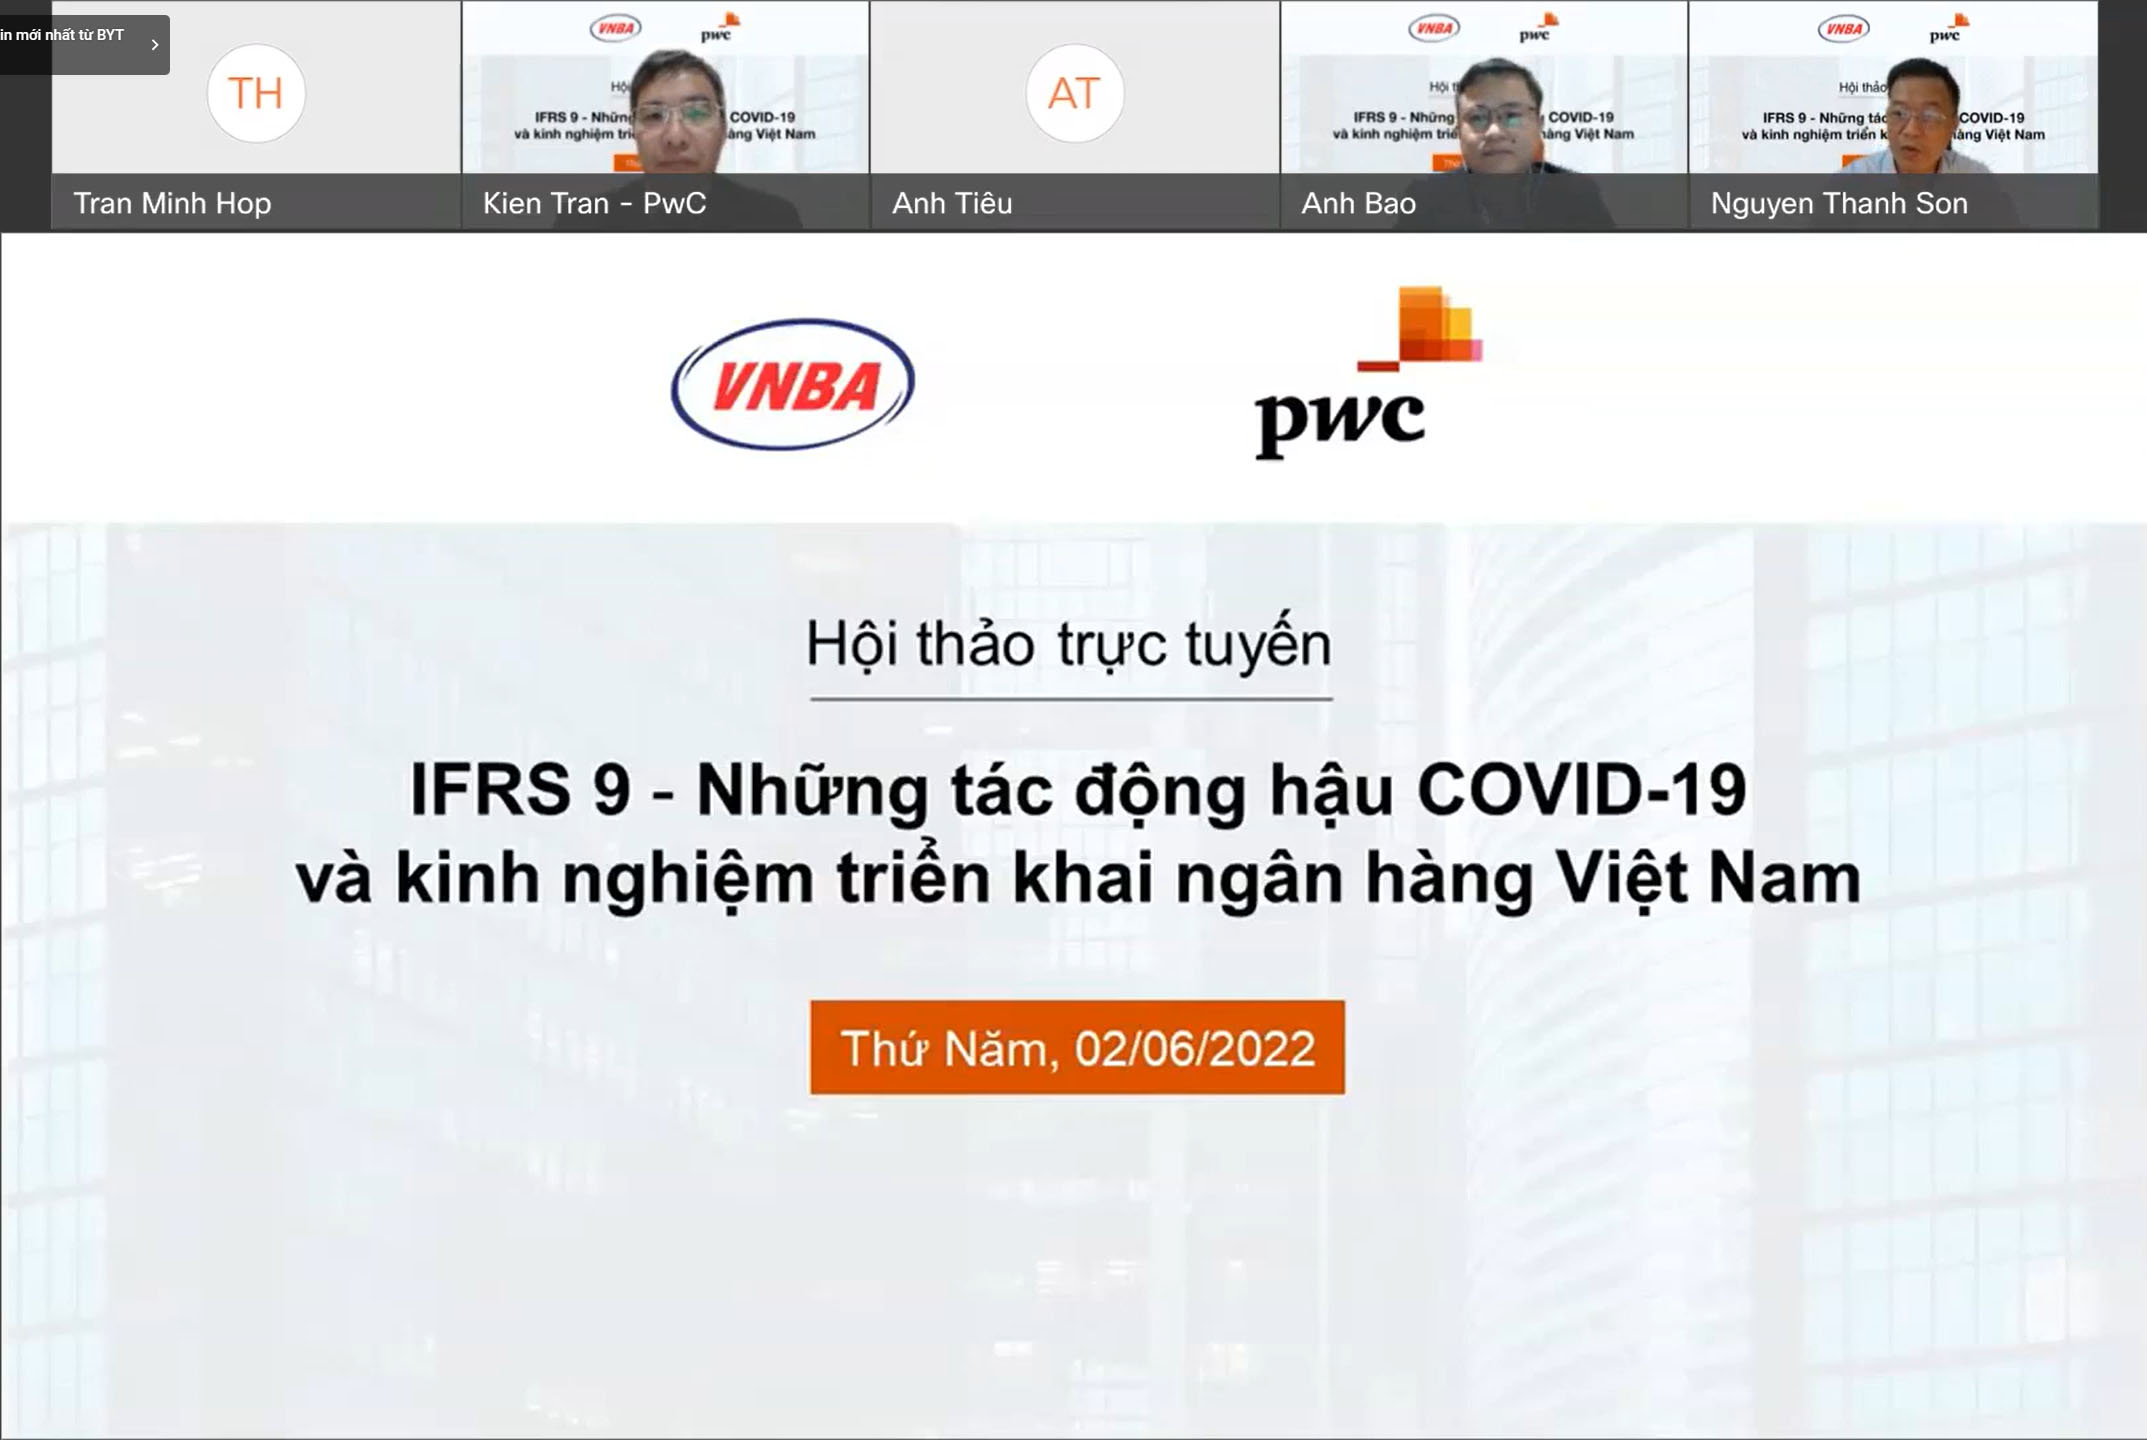 Hội thảo trực tuyến “IFRS9: Những tác động hậu COVID-19 và kinh nghiệm triển khai tại Ngân hàng Việt Nam”